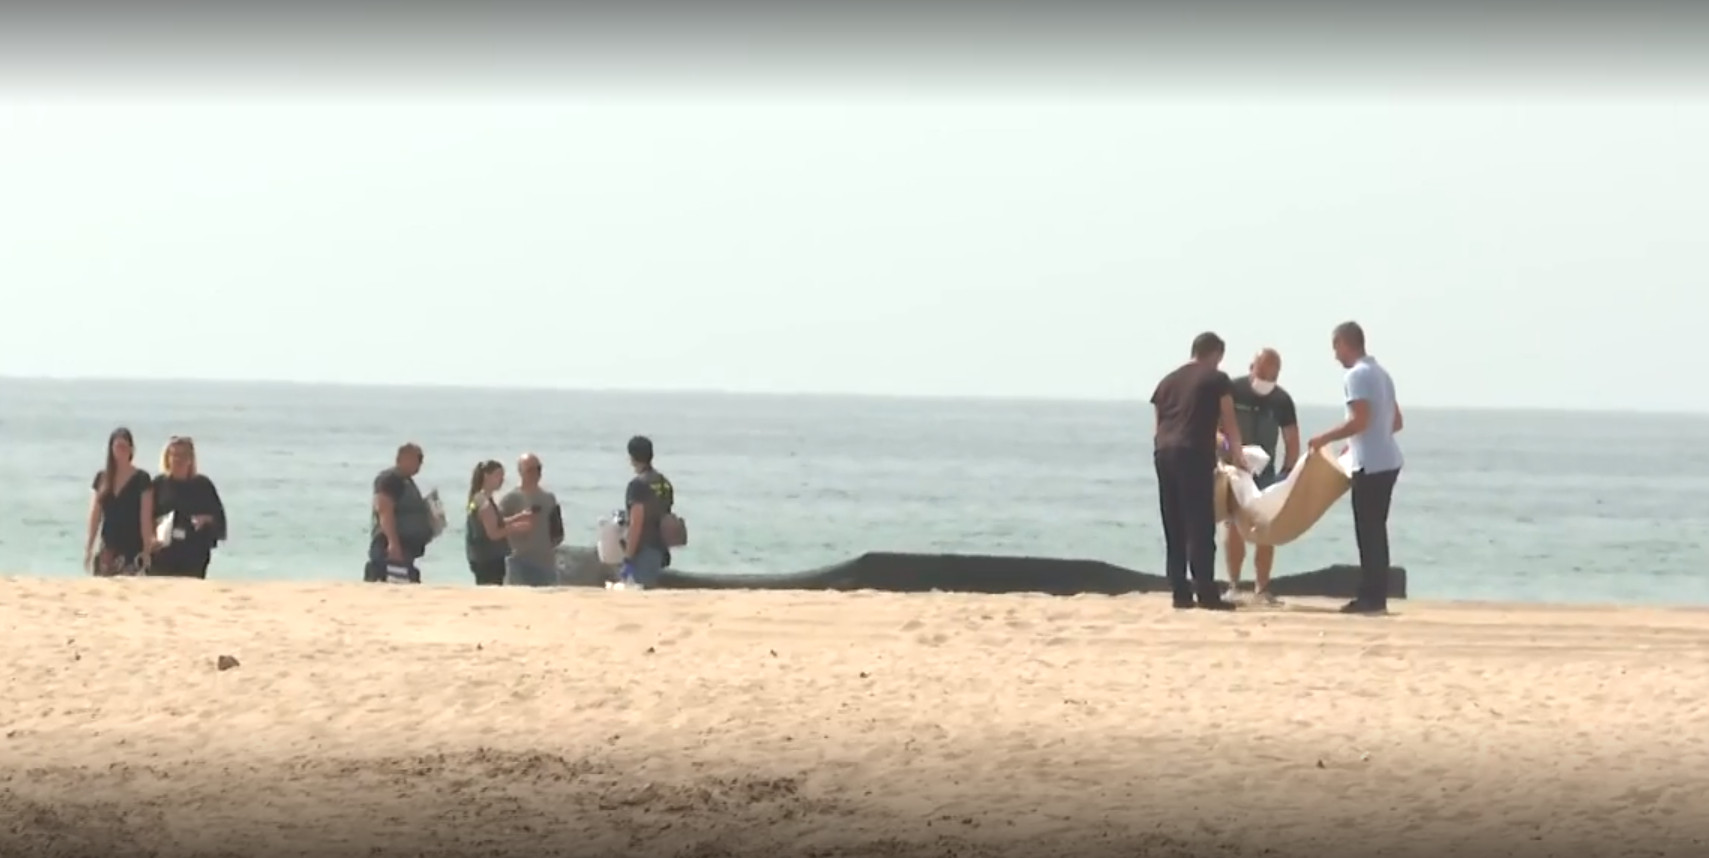 Ισπανία: Σορός παιδιού βρέθηκε σε παραλία - Εικάζεται πως ήταν παιδί μεταναστών που πνίγηκε στη Μεσόγειο